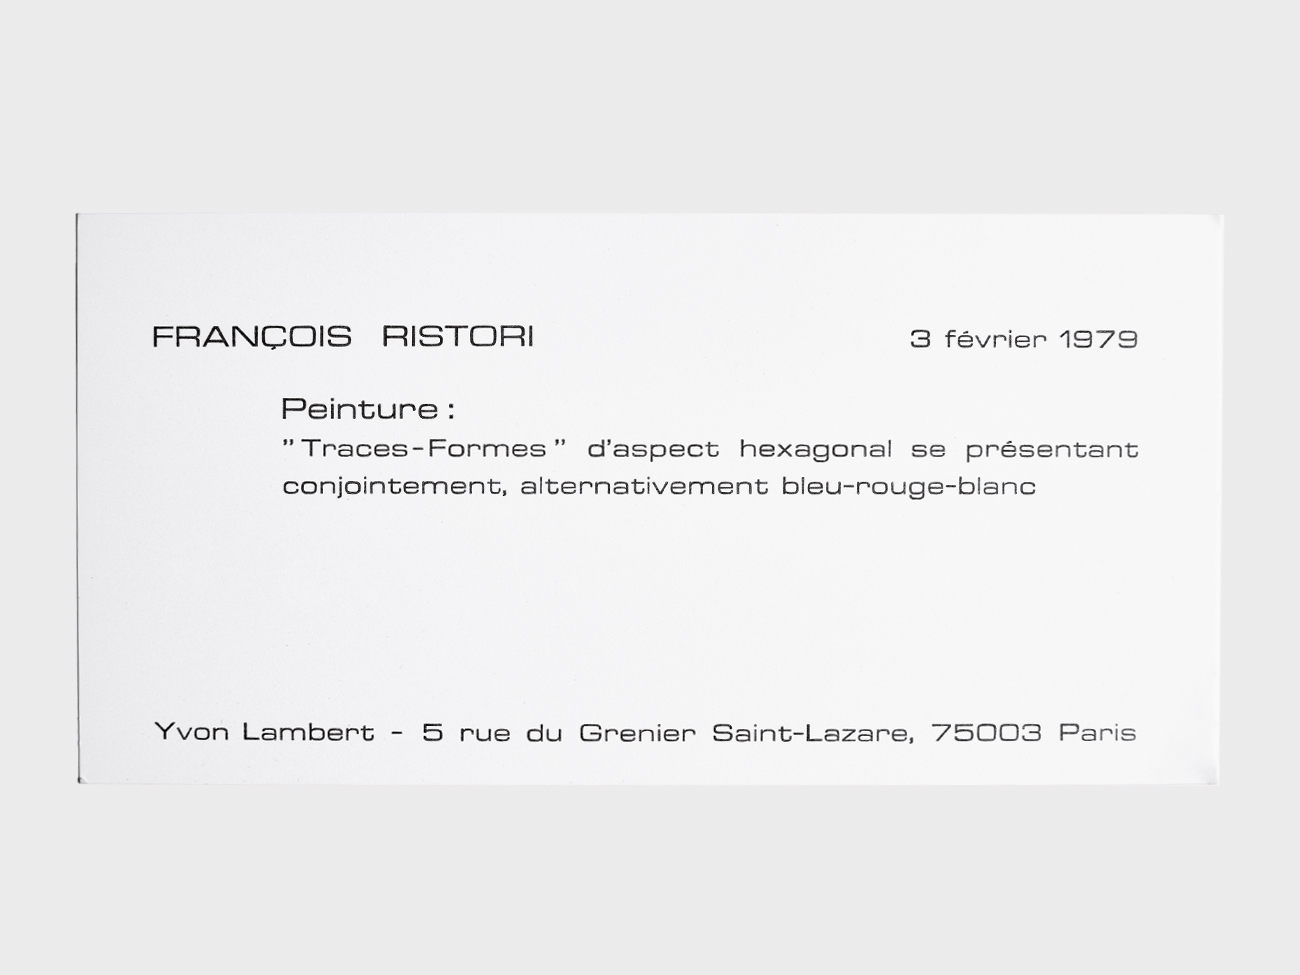 Francois-Ristori-expo-1979-carton